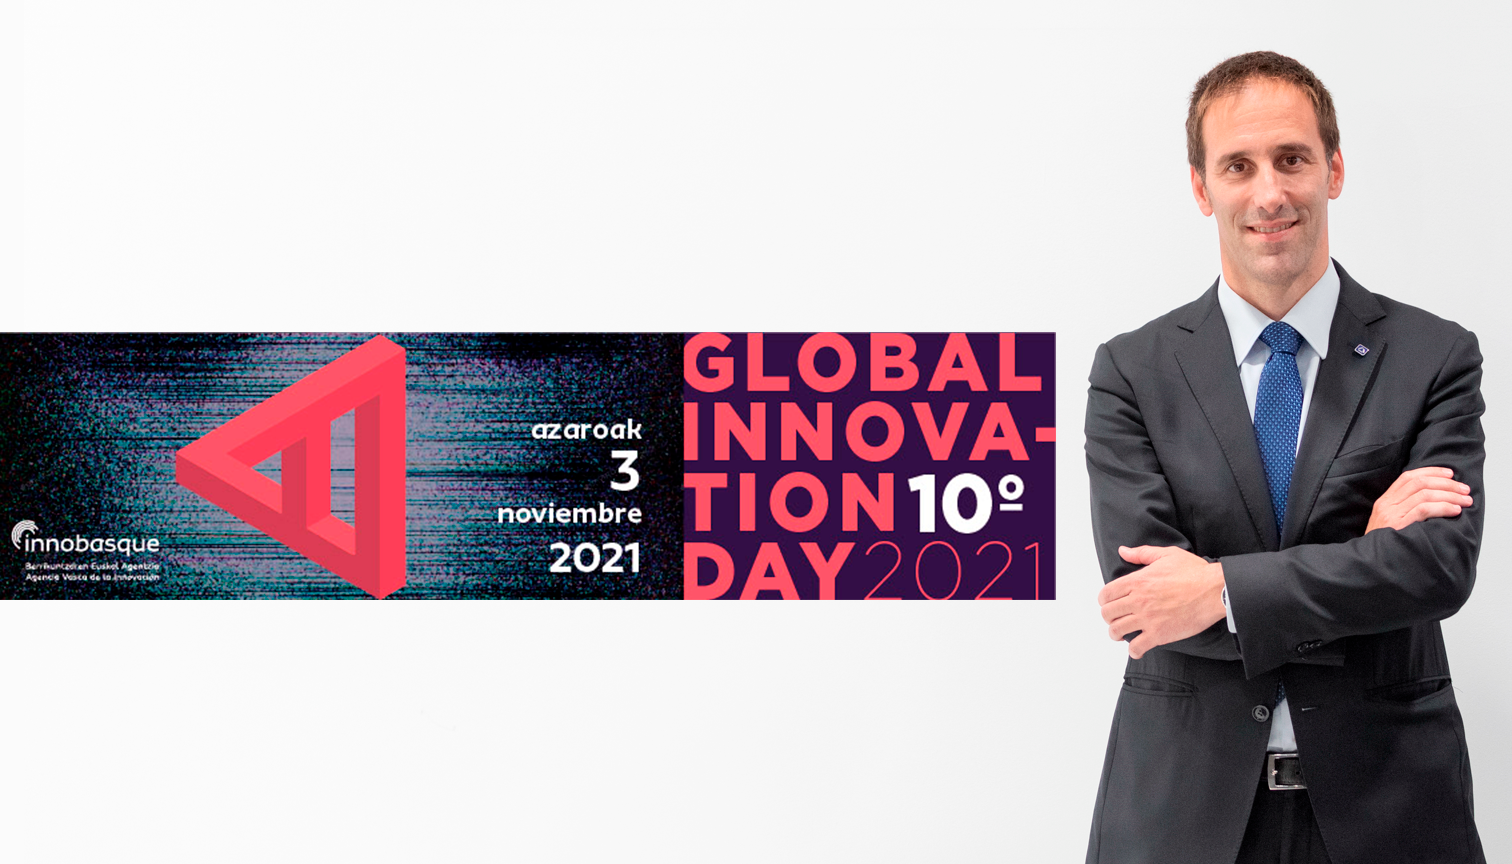 Danobatgroupek etorkizuneko joera teknologikoak aztertuko ditu Global Innovation Day 2021 jardunaldian